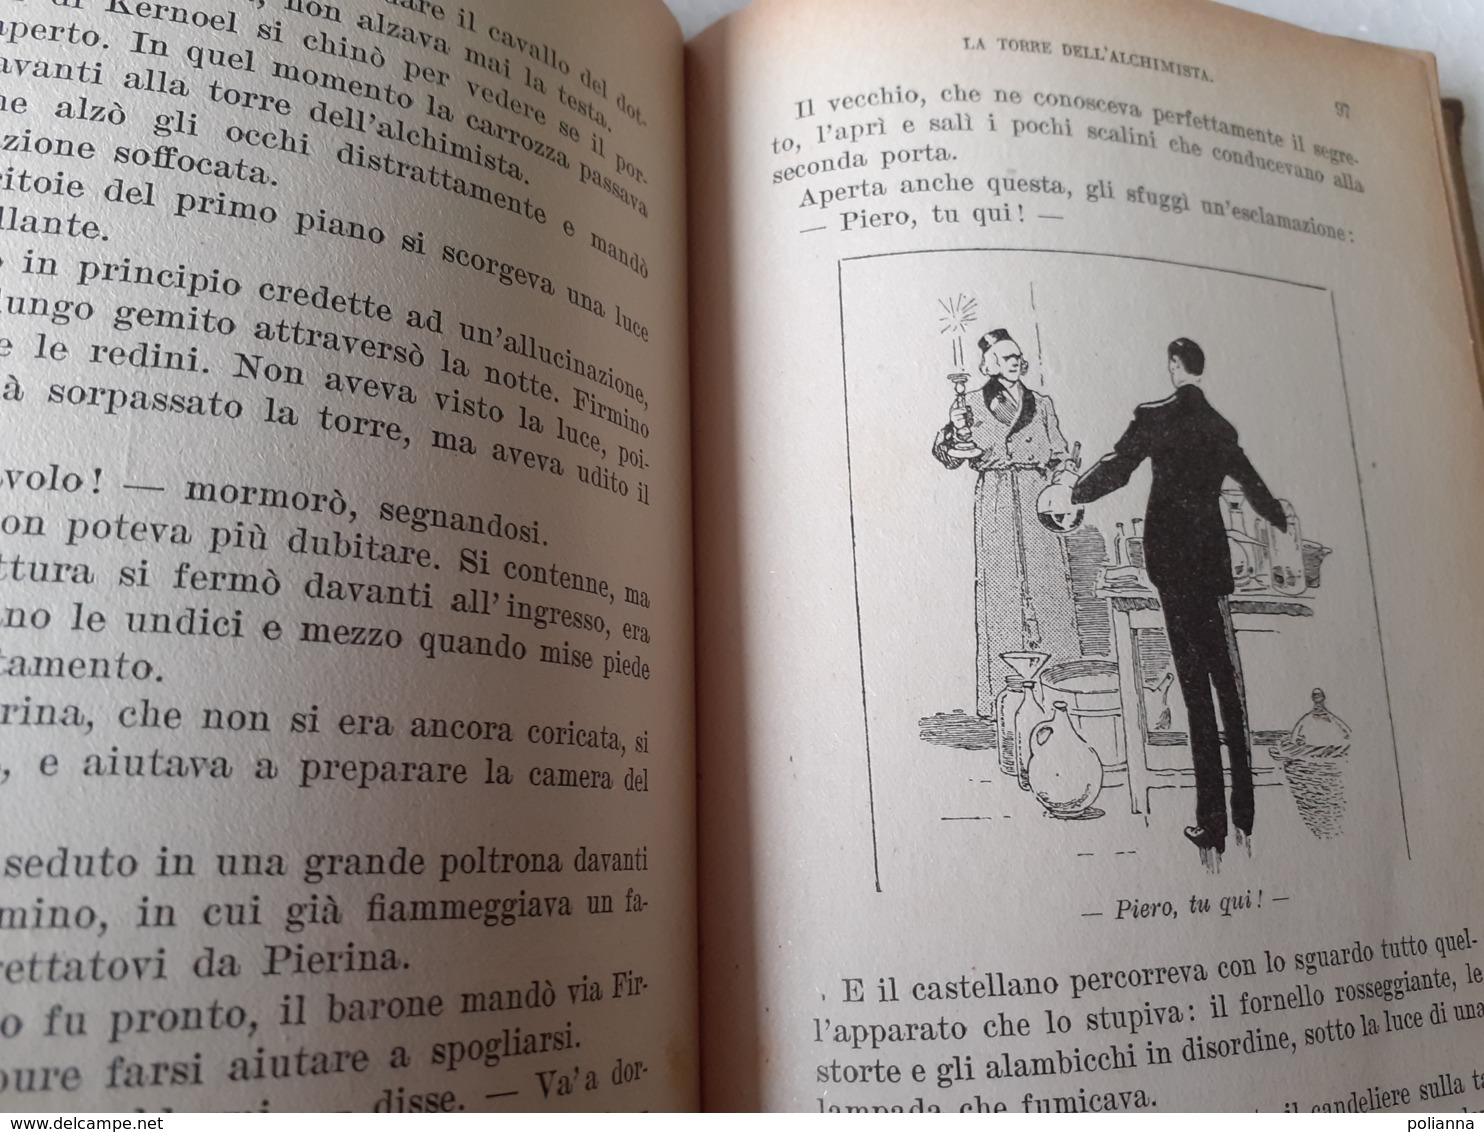 M#0W61 "Biblioteca Dei Miei Ragazzi" : A. De Maillane LA TORRE DELL'ALCHIMISTA Salani Ed.1937 - Antichi